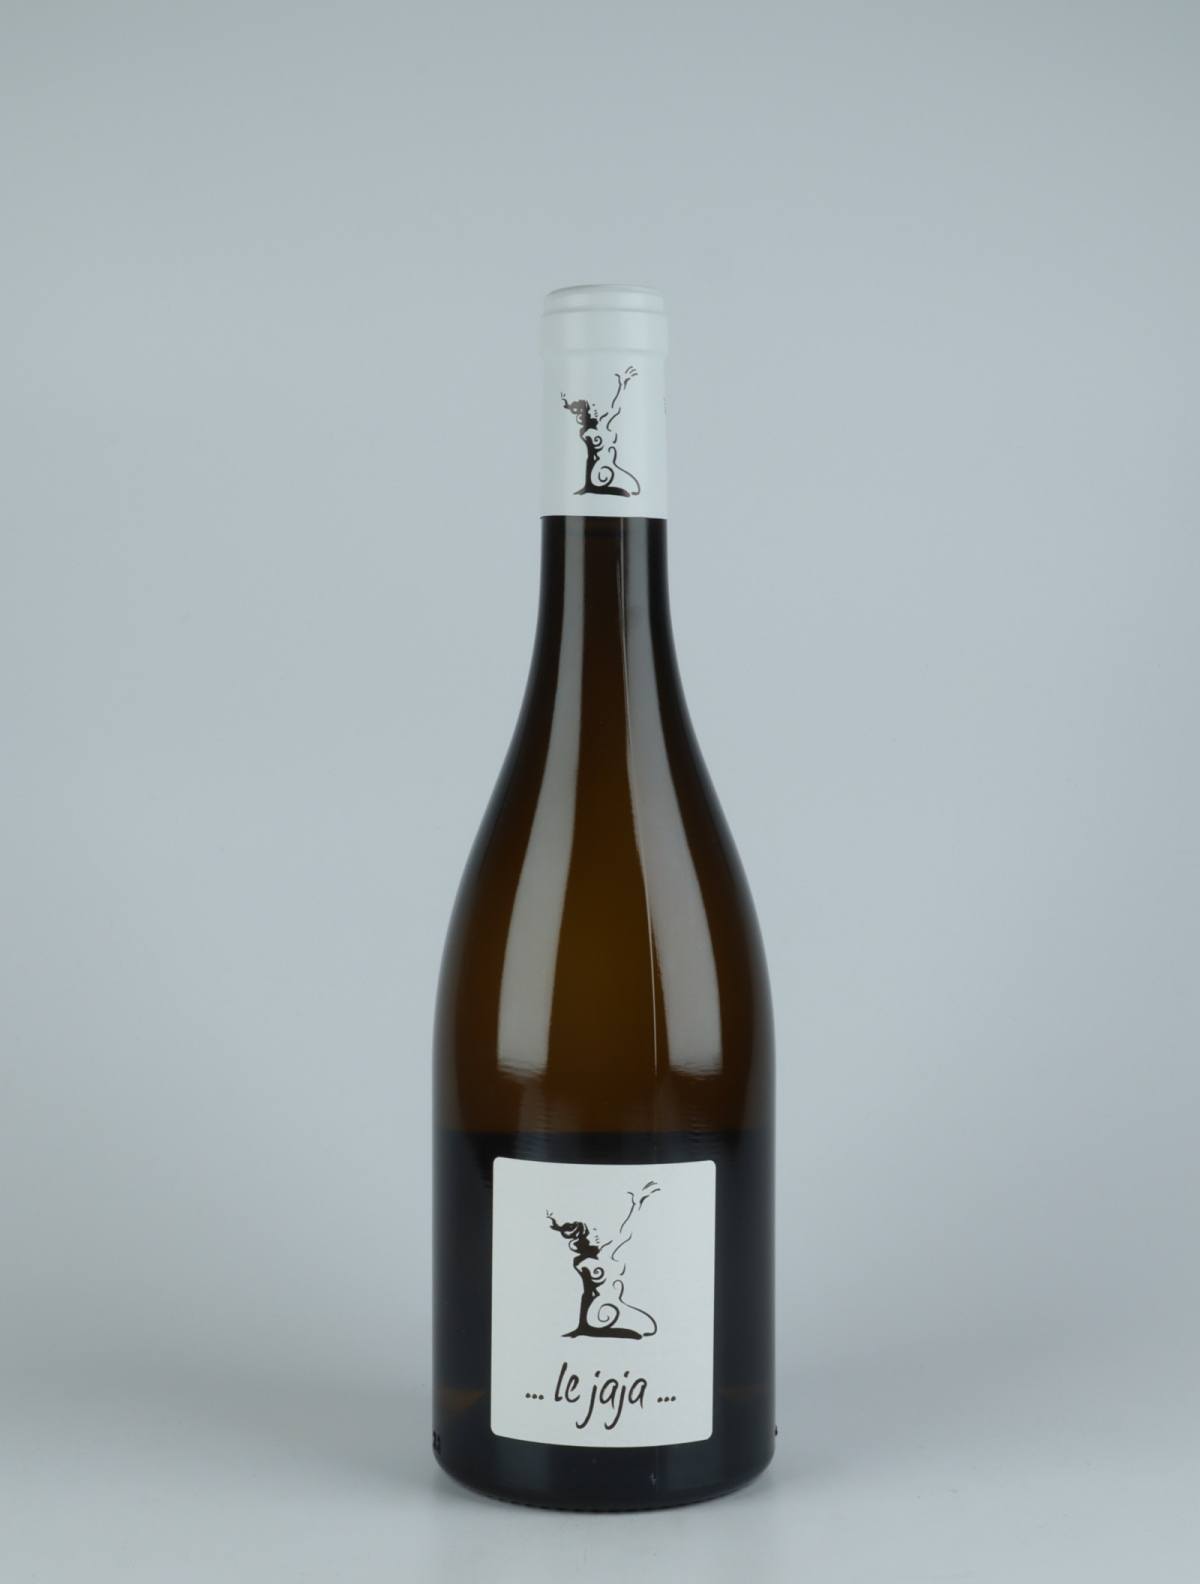 En flaske 2020 Chignin - Le Jaja Hvidvin fra Gilles Berlioz, Savoie i Frankrig